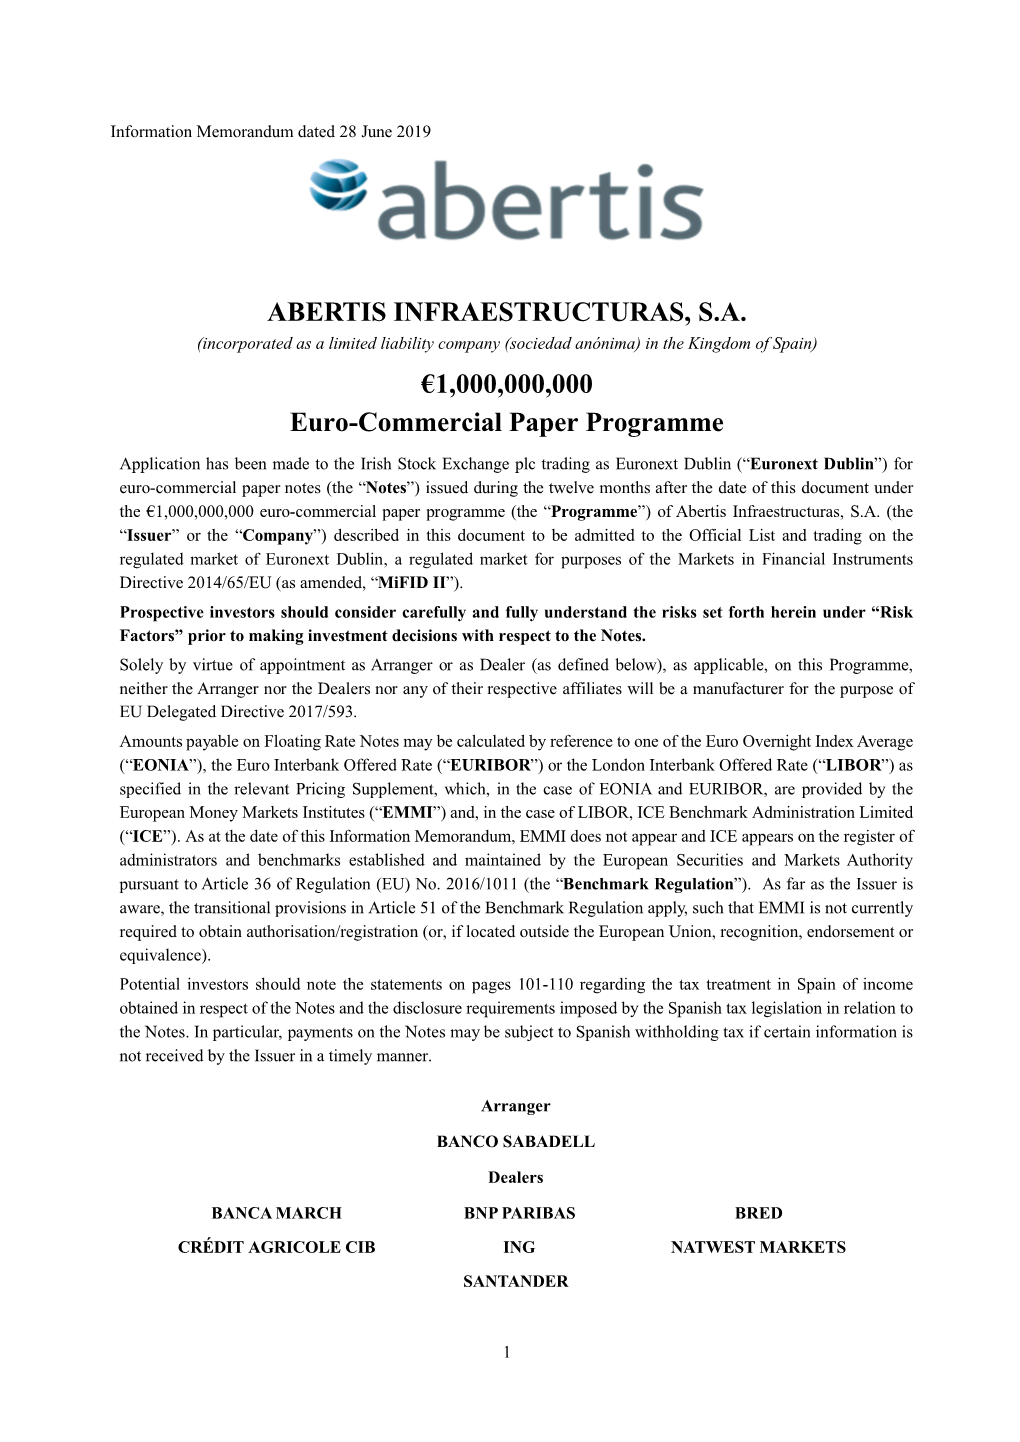 ABERTIS INFRAESTRUCTURAS, S.A. €1,000,000,000 Euro-Commercial